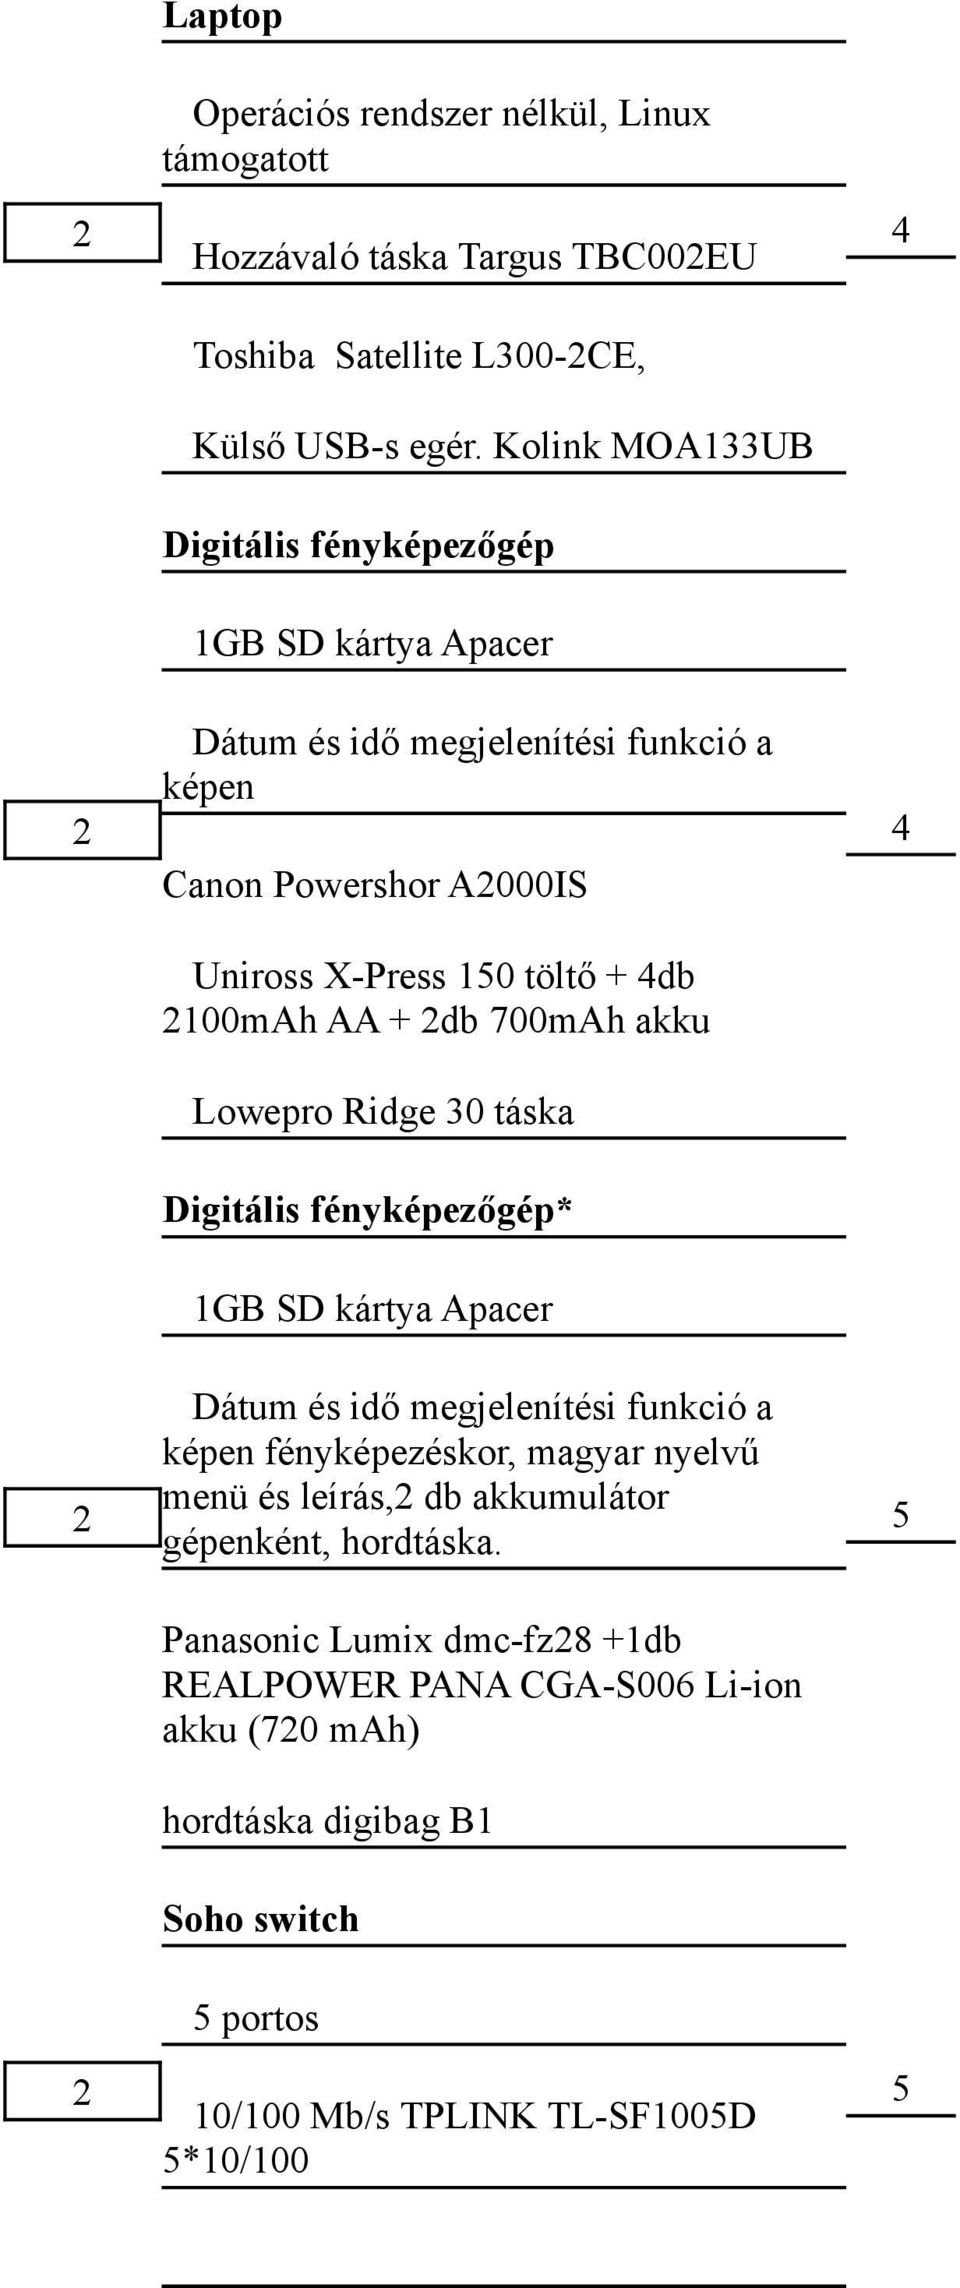 2db 700mAh akku Lowepro Ridge 0 táska Digitális fényképezőgép* GB SD kártya Apacer Dátum és idő megjelenítési funkció a képen fényképezéskor, magyar nyelvű menü és